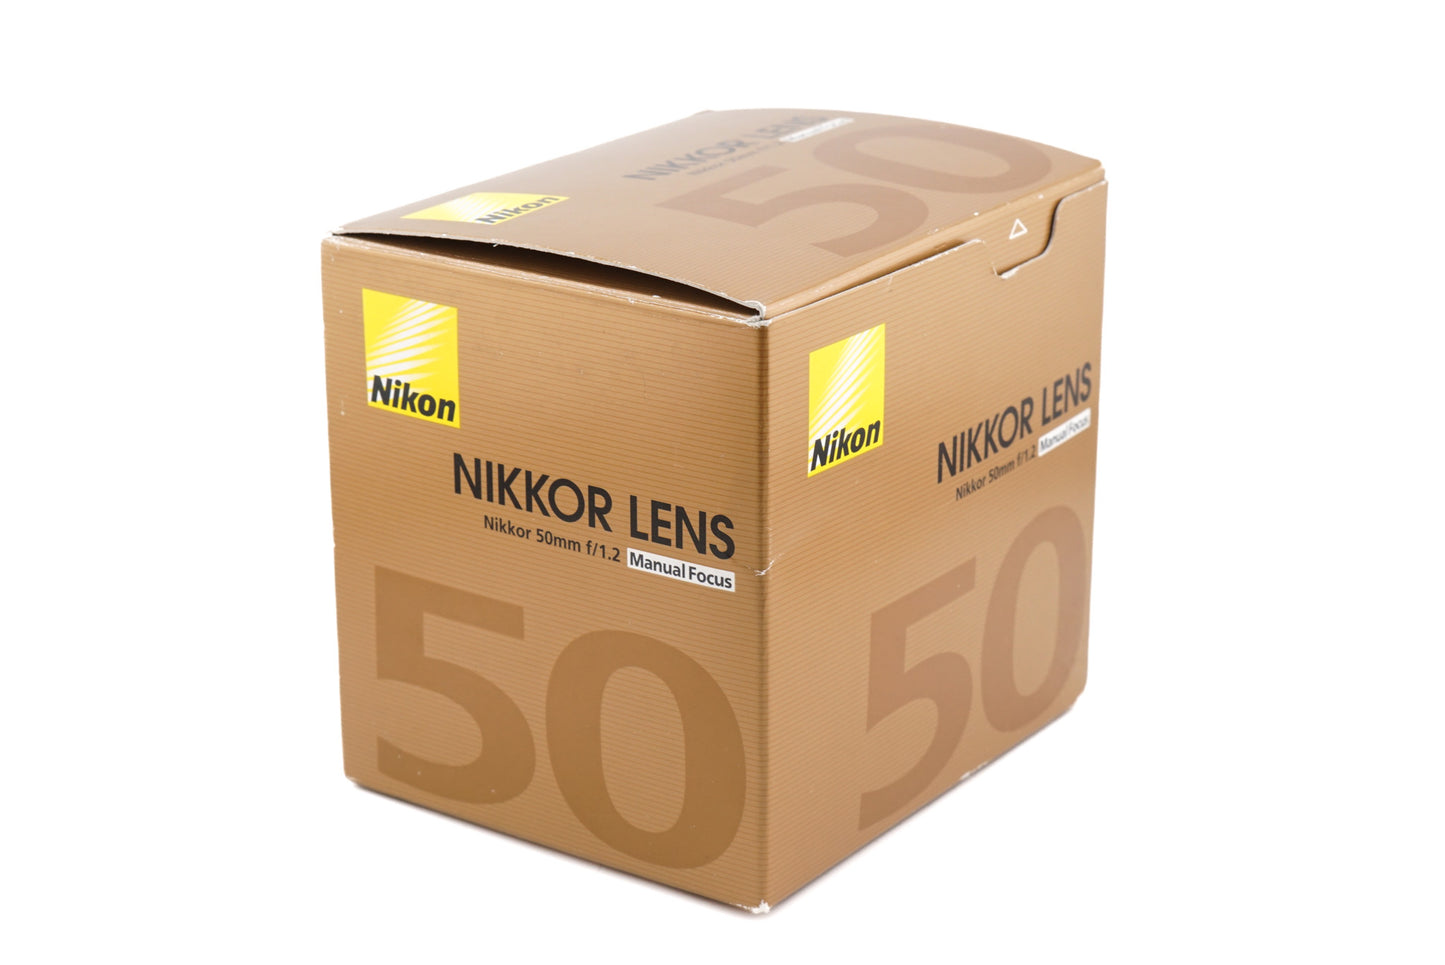 Nikon 50mm f1.2 Nikkor AI-S